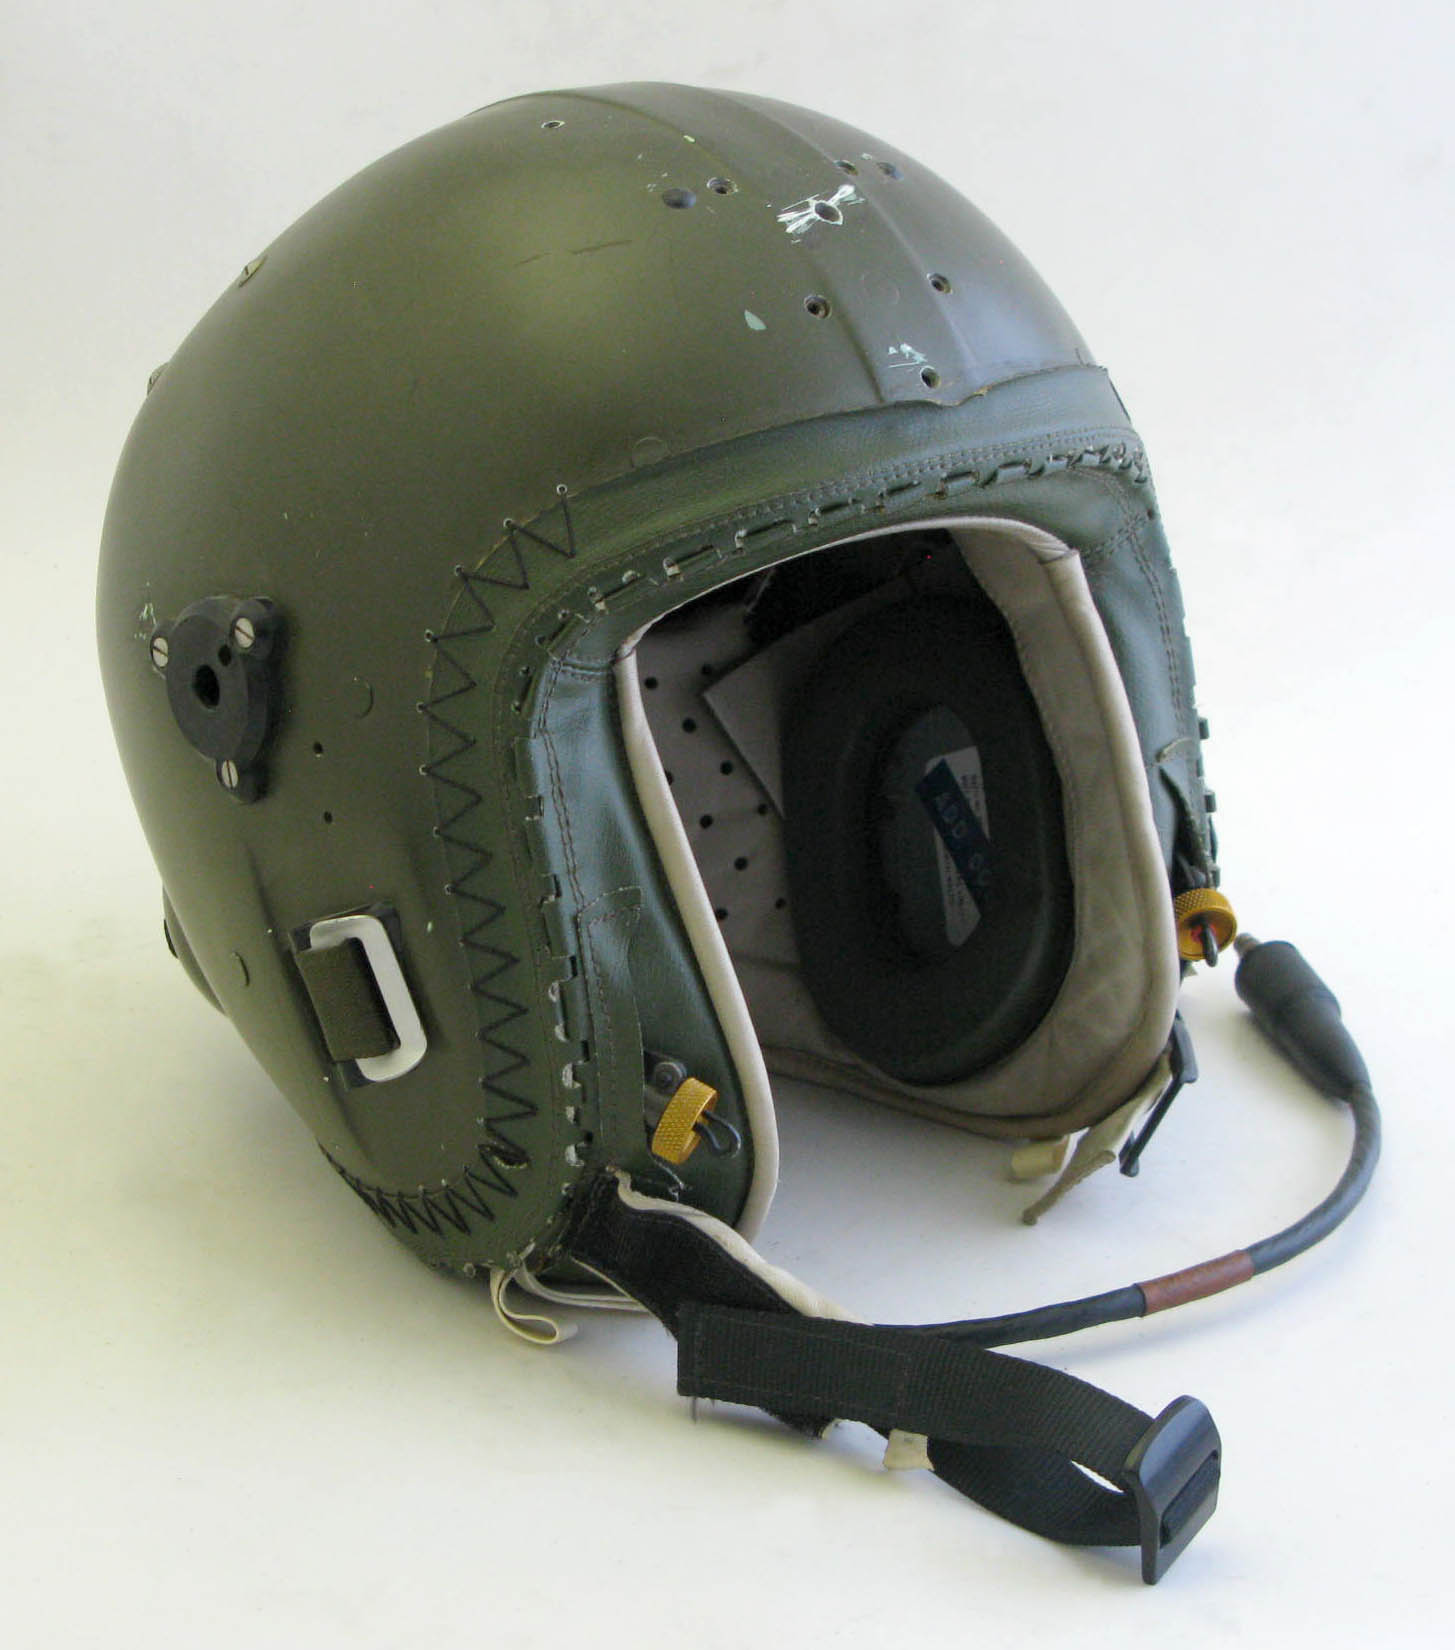 Flying Helmet (Green)